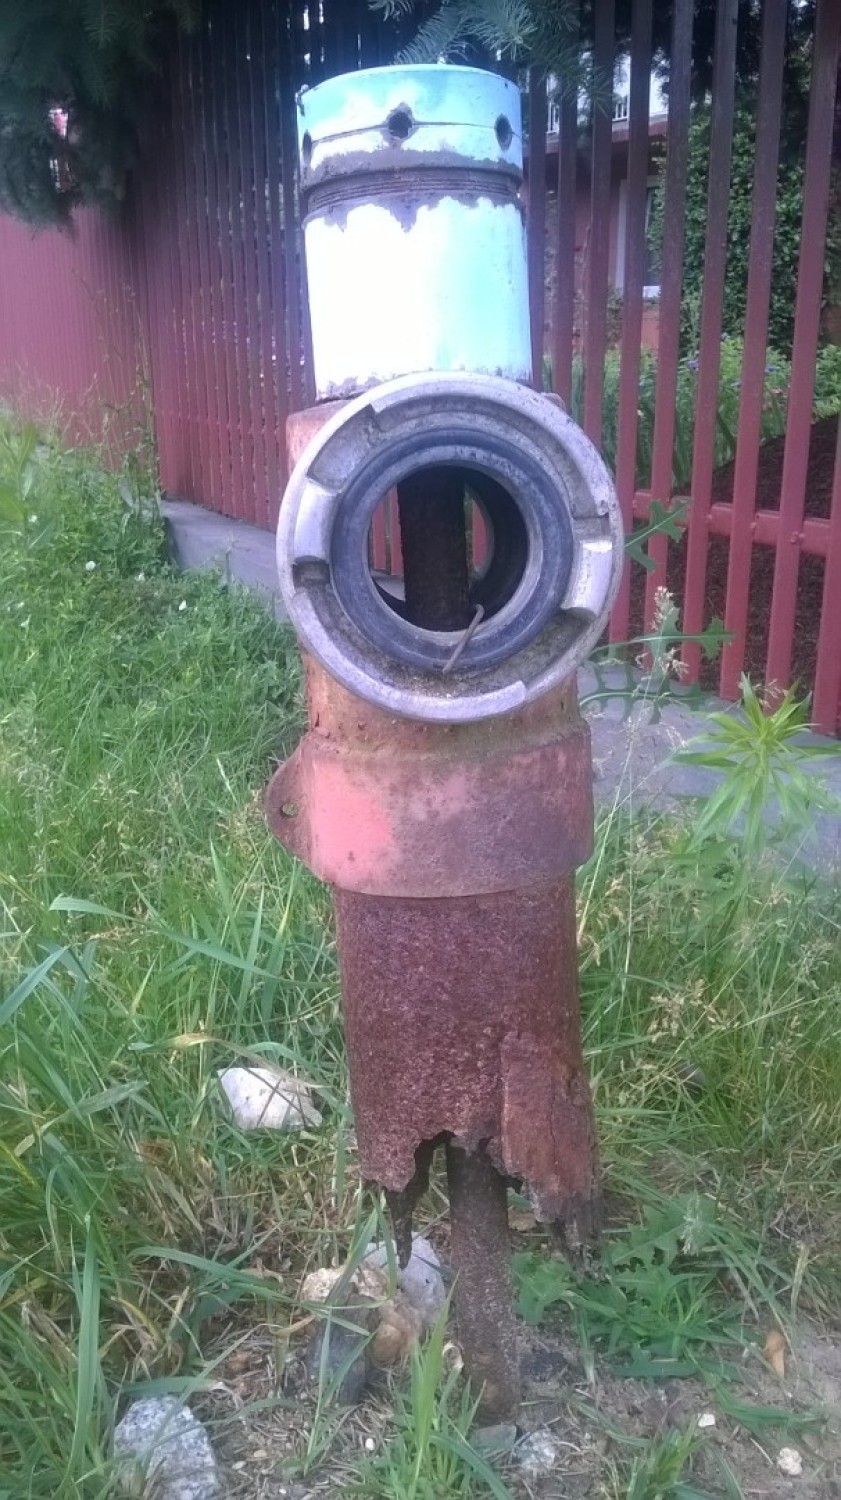 Niesprawne hydranty sprawiły problem strażakom-ochotnikom z Chojnego w gminie Sieradz